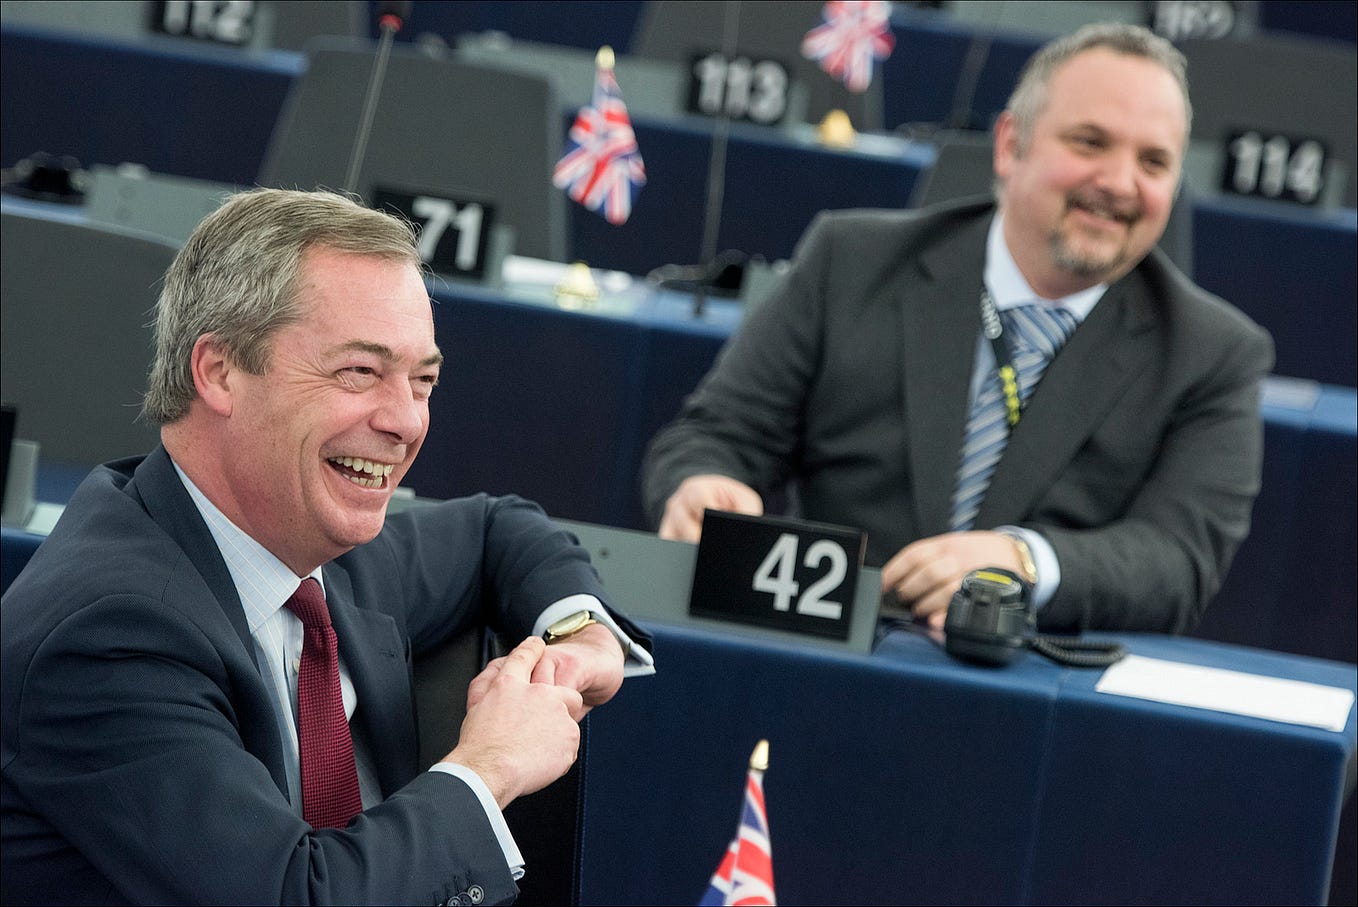 El programa de UKIP, contra Europa y la inmigración